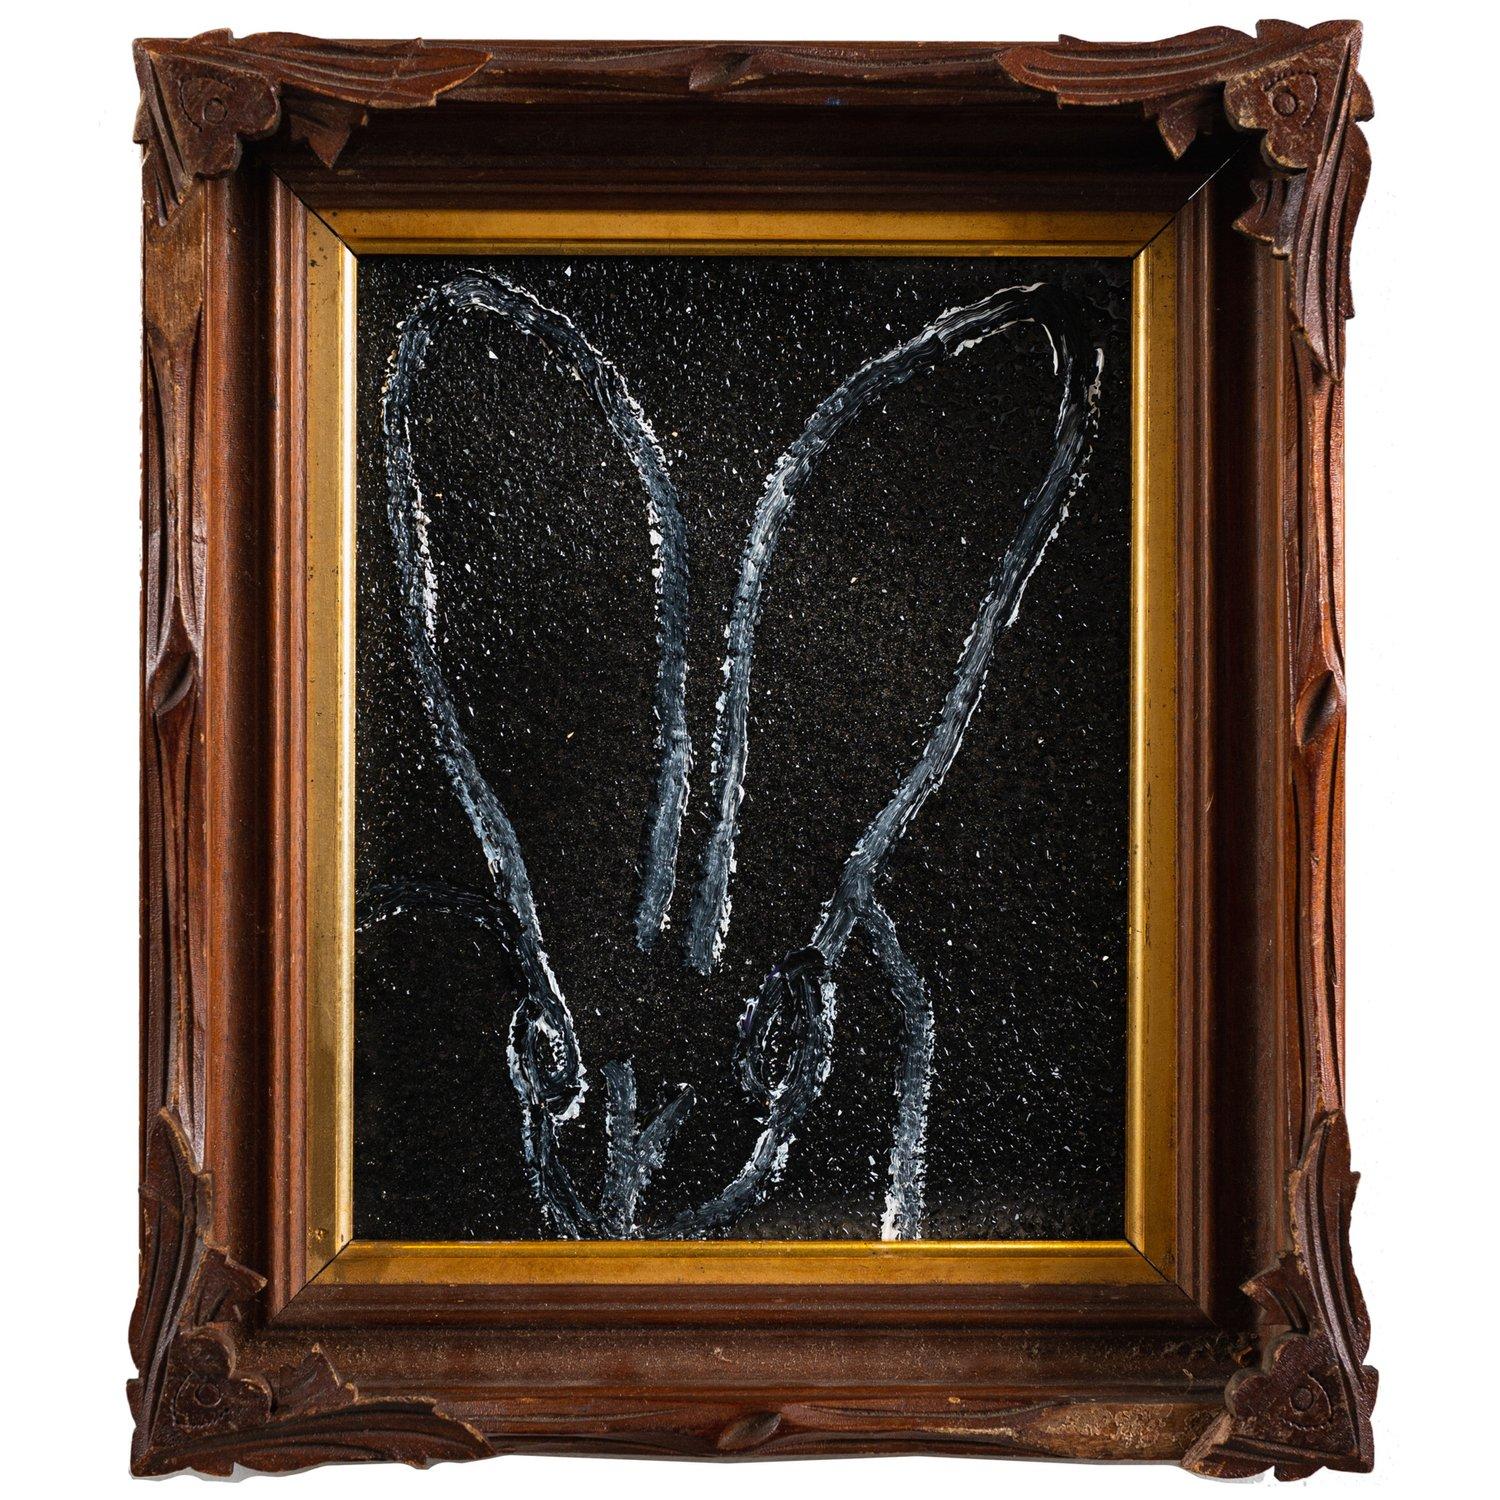 L'œuvre "Nightwatch II" de l'artiste renommé Hunt Slonem est une peinture à l'huile 10x8 sur fond noir et lapin blanc avec poussière de diamant sur panneau de bois d'un lapin abstrait contemporain dans son choix d'encadrement antique.

*La peinture